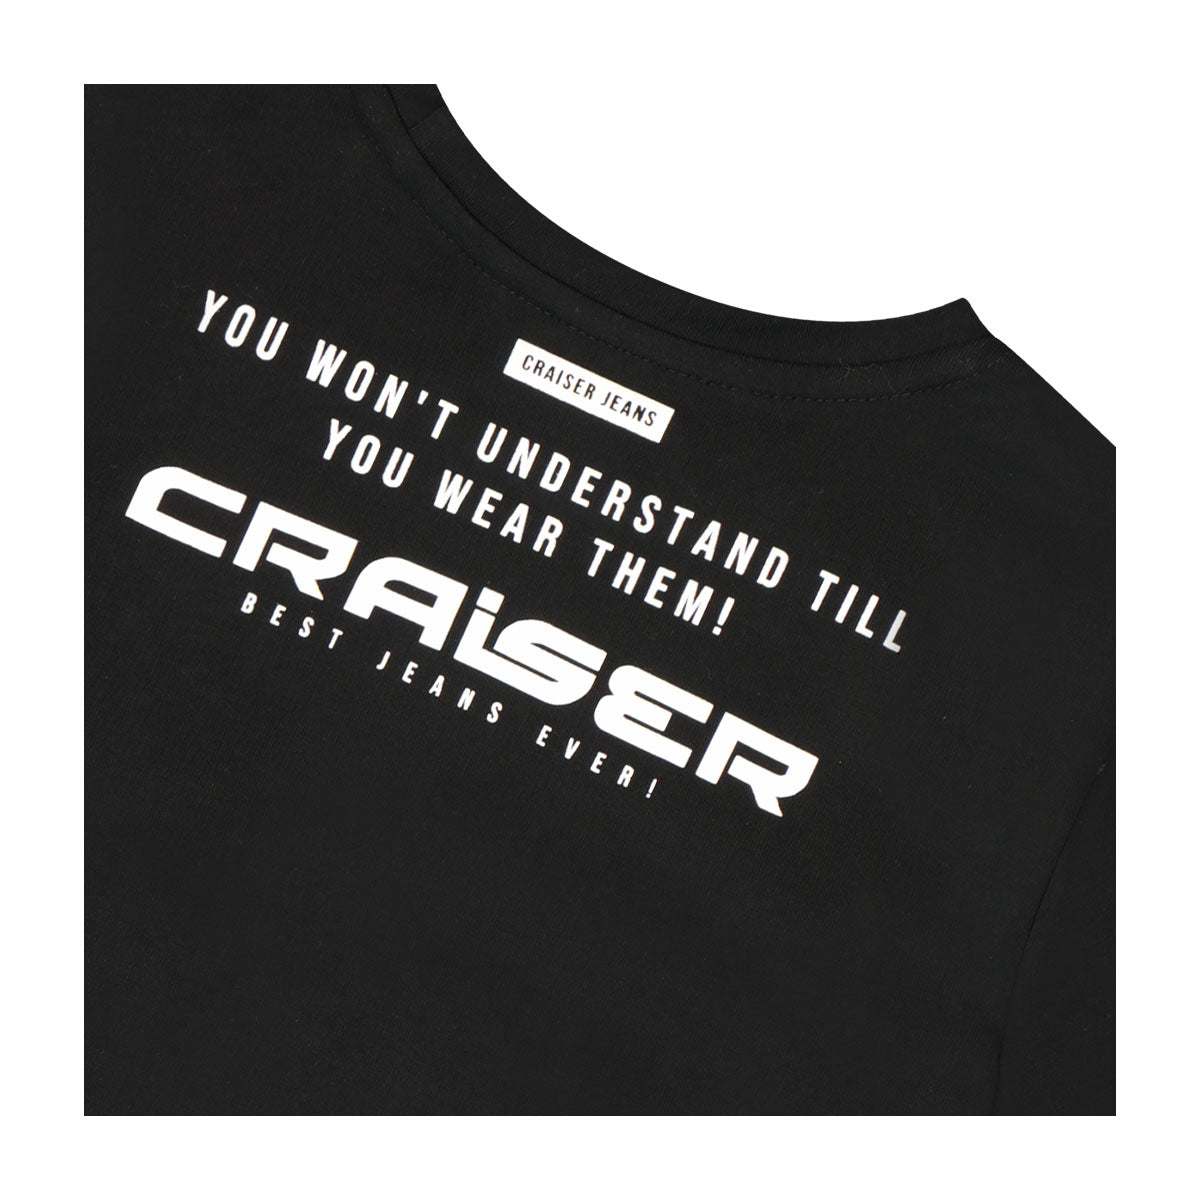 חולצת טי שרט CRAISER כיתוב אחורי לילדים